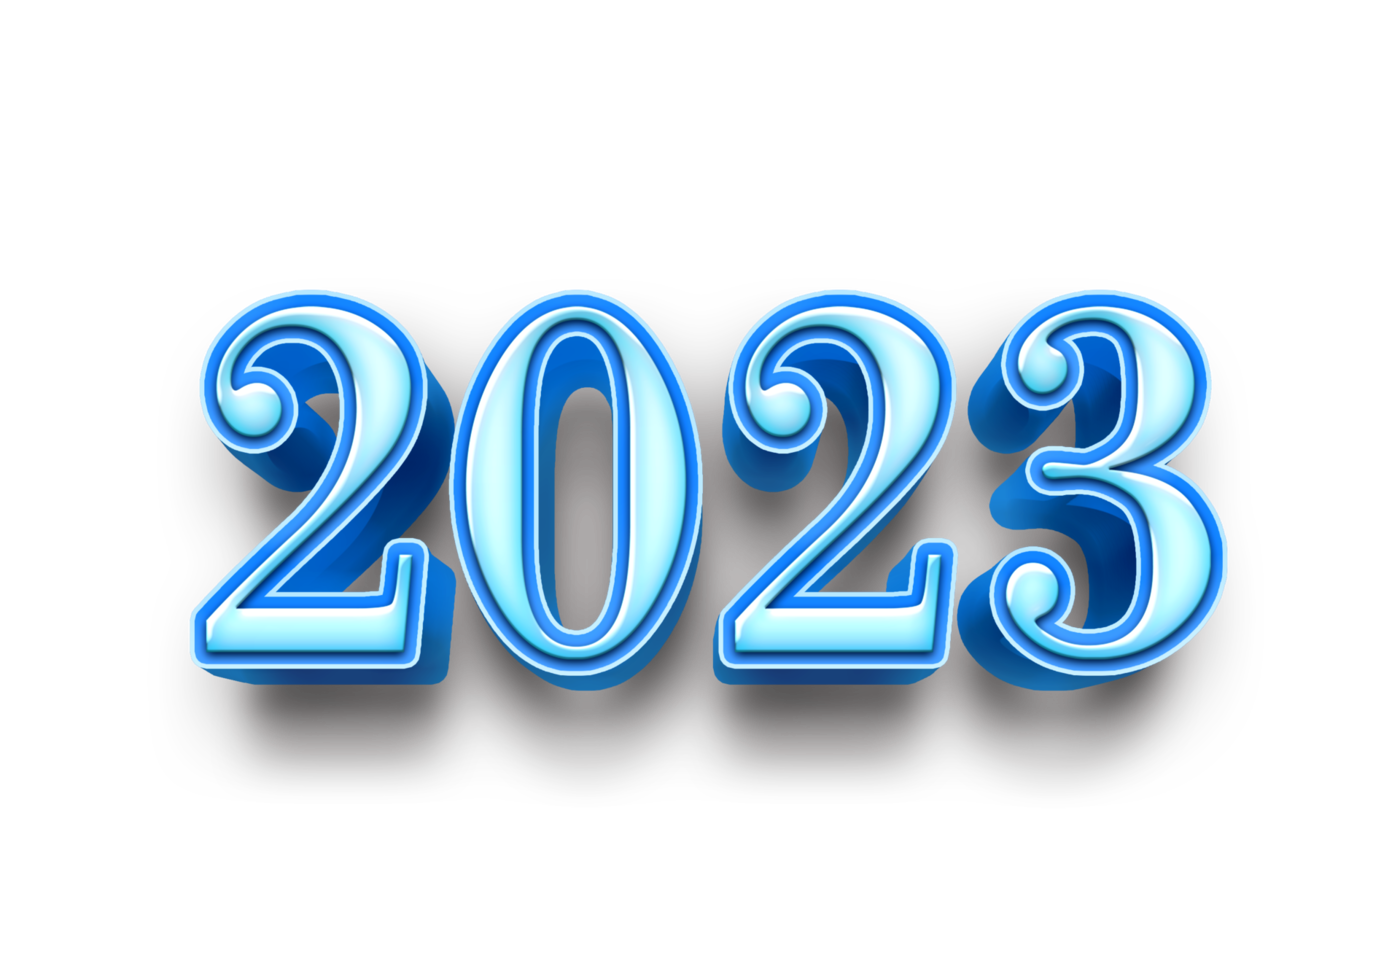 2023 texto número ano 3d brincar gelo azul png